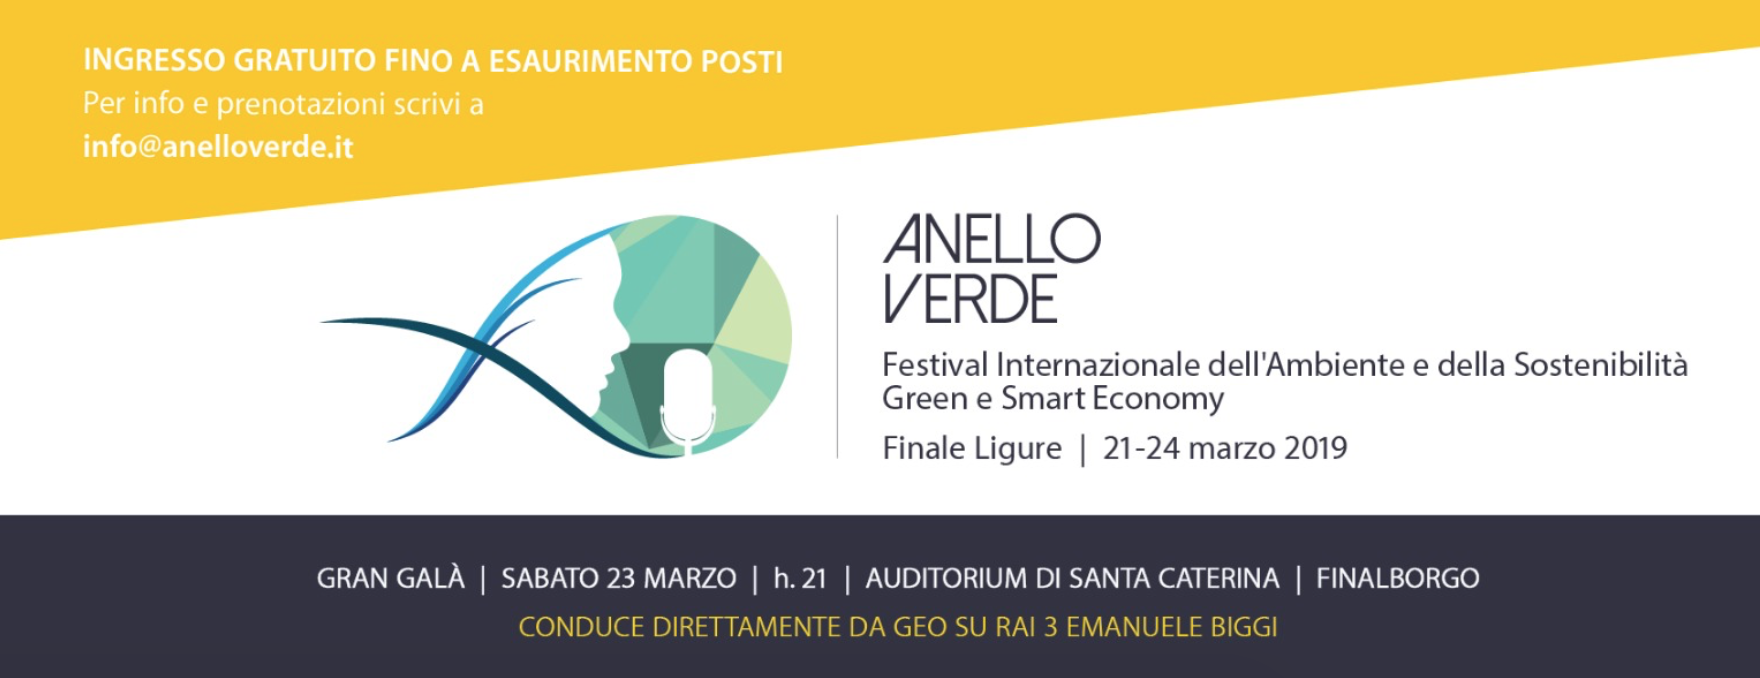 A Finale Ligure torna Anello Verde, il festival internazionale dell’ambiente e della sostenibilità il 21-24 marzo